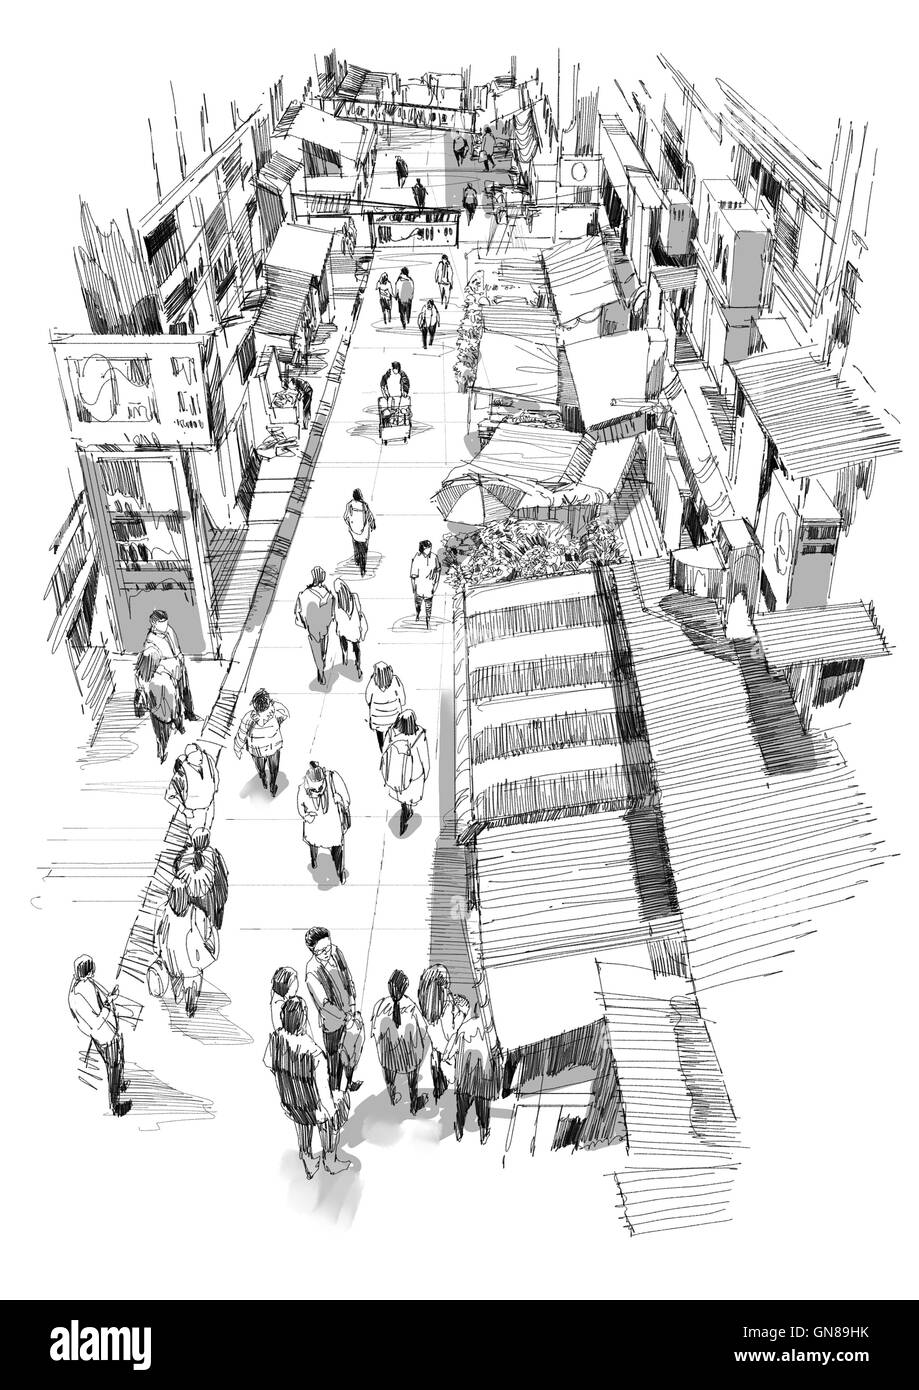 die Hand gezeichnete Skizze von Menschen zu Fuß im Markt Straße, Illustration, Zeichnung Stockfoto